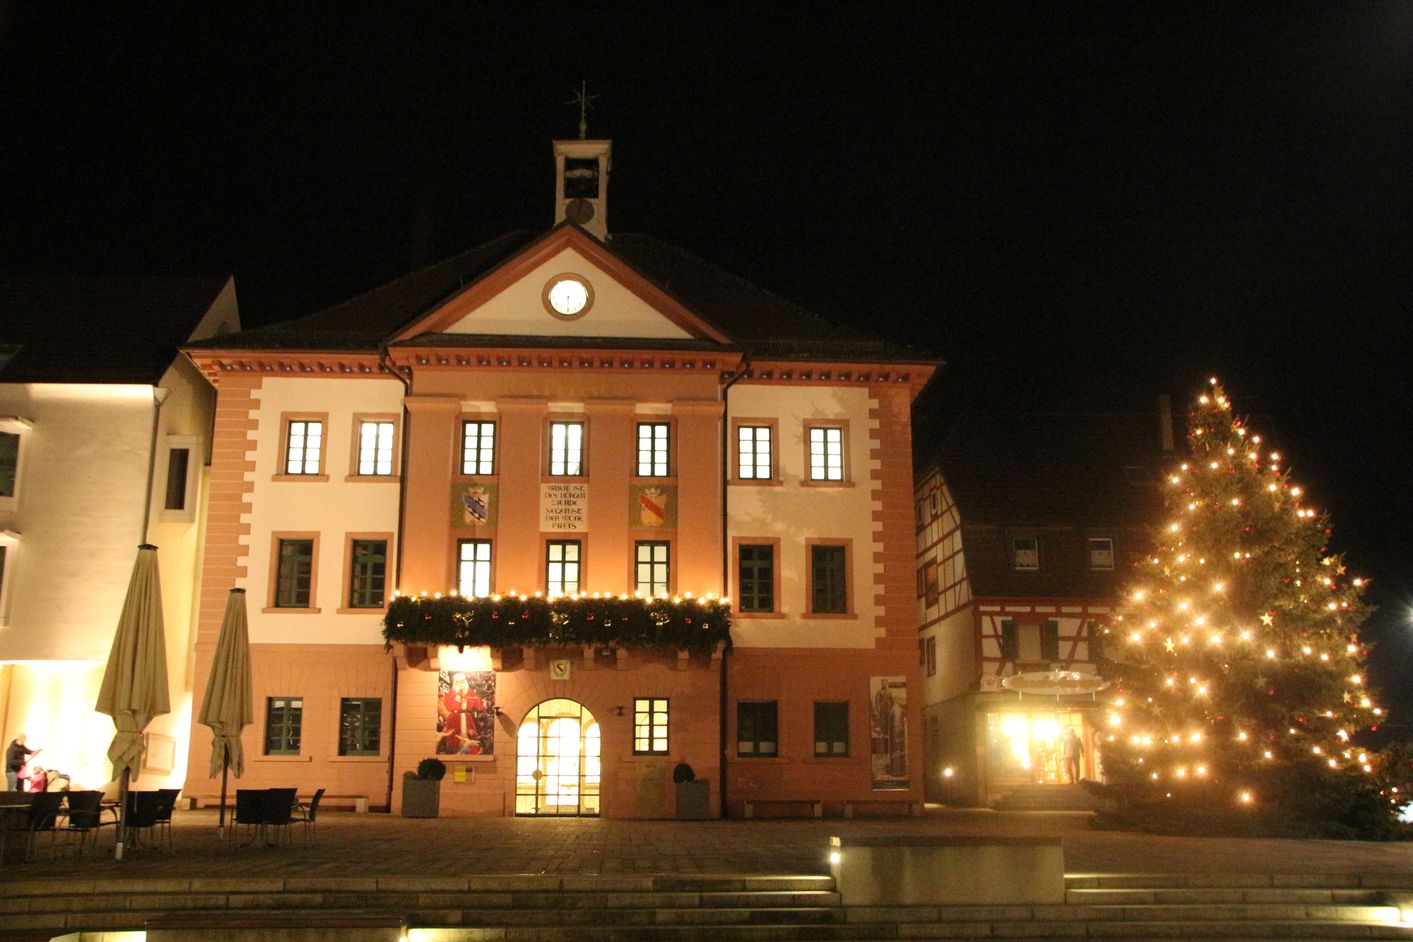 Weihnachtsbeleuchtung am Rathaus